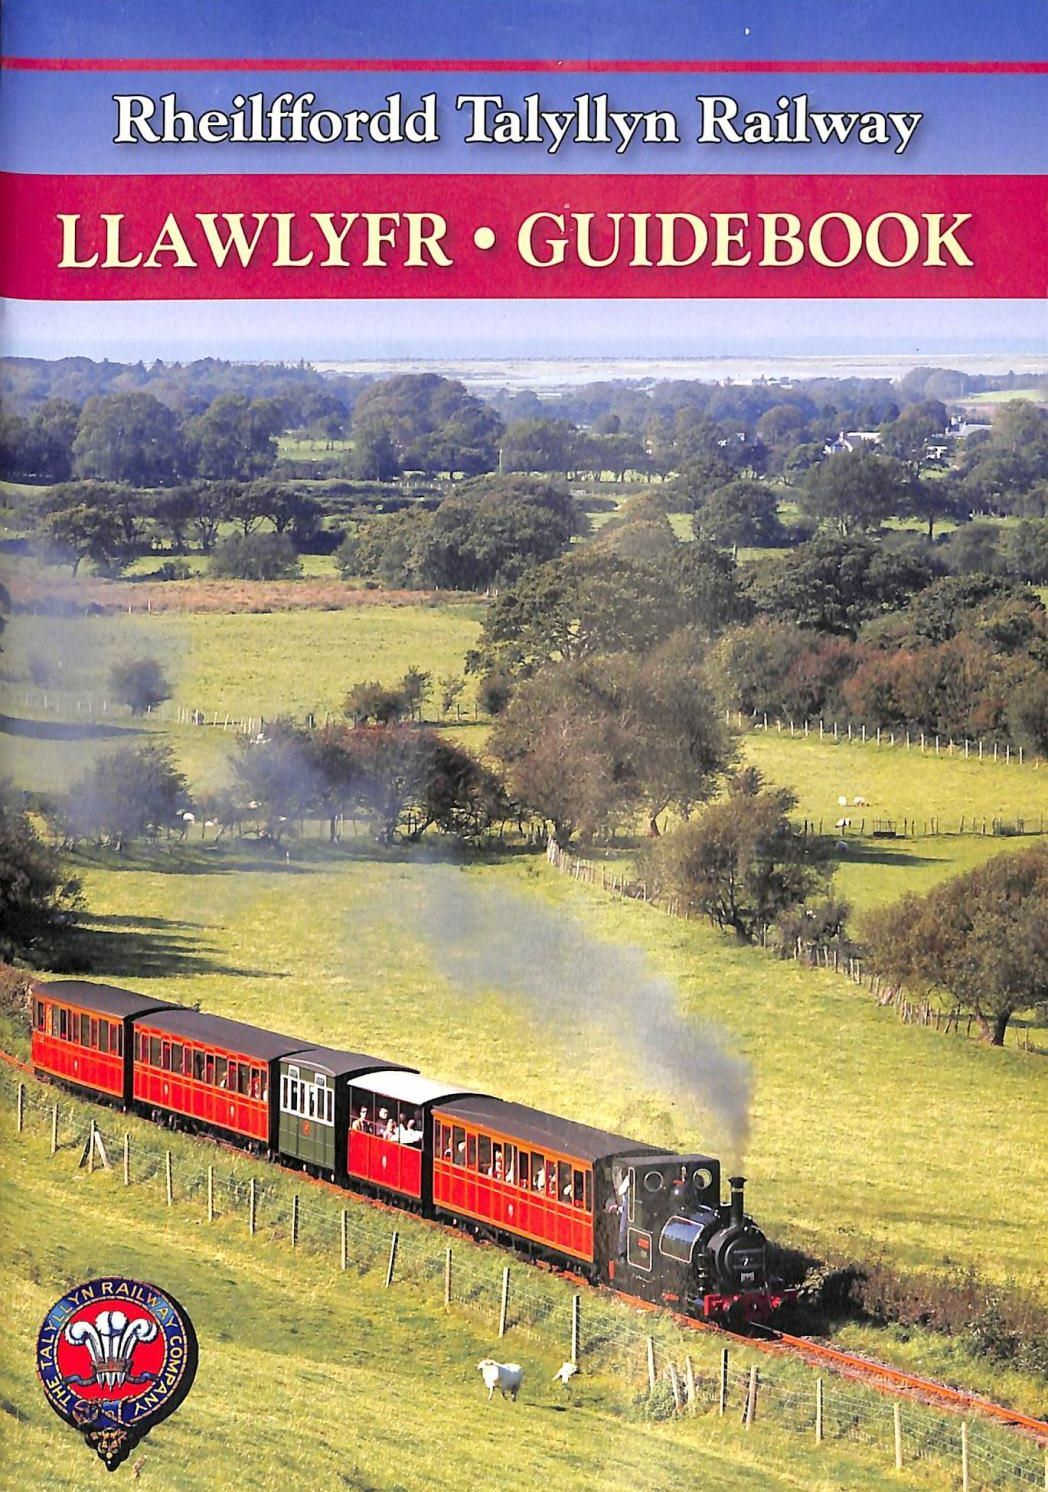 Rheilffordd Talyllyn Railway - Llawlyfr Guidebook